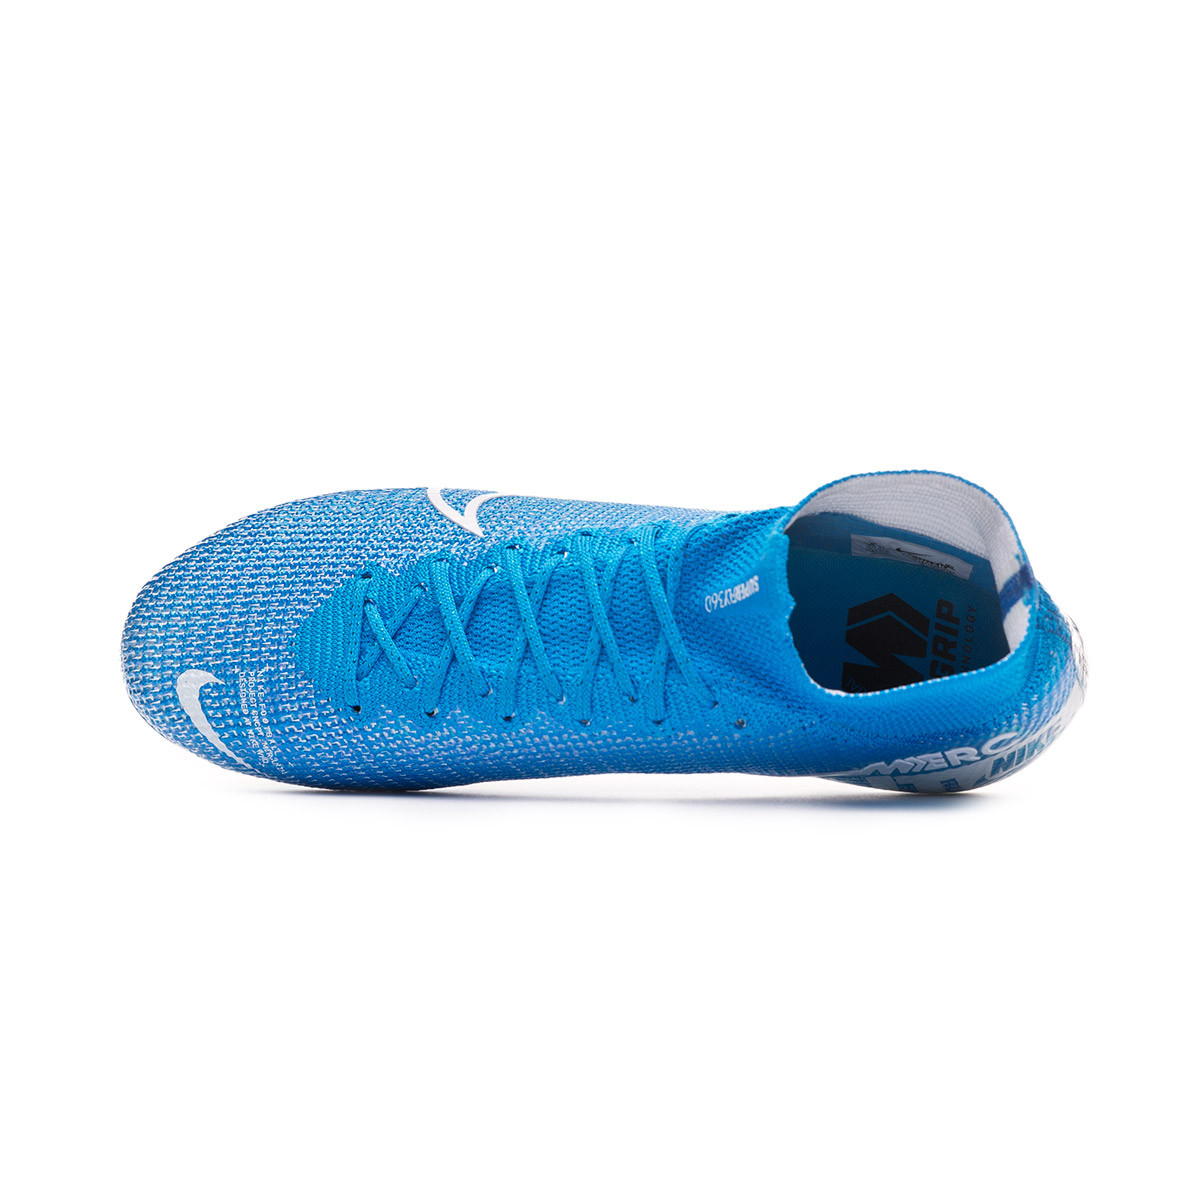 Nuevas Zapatos De Fútbol Nike Mercurial Superfly VI